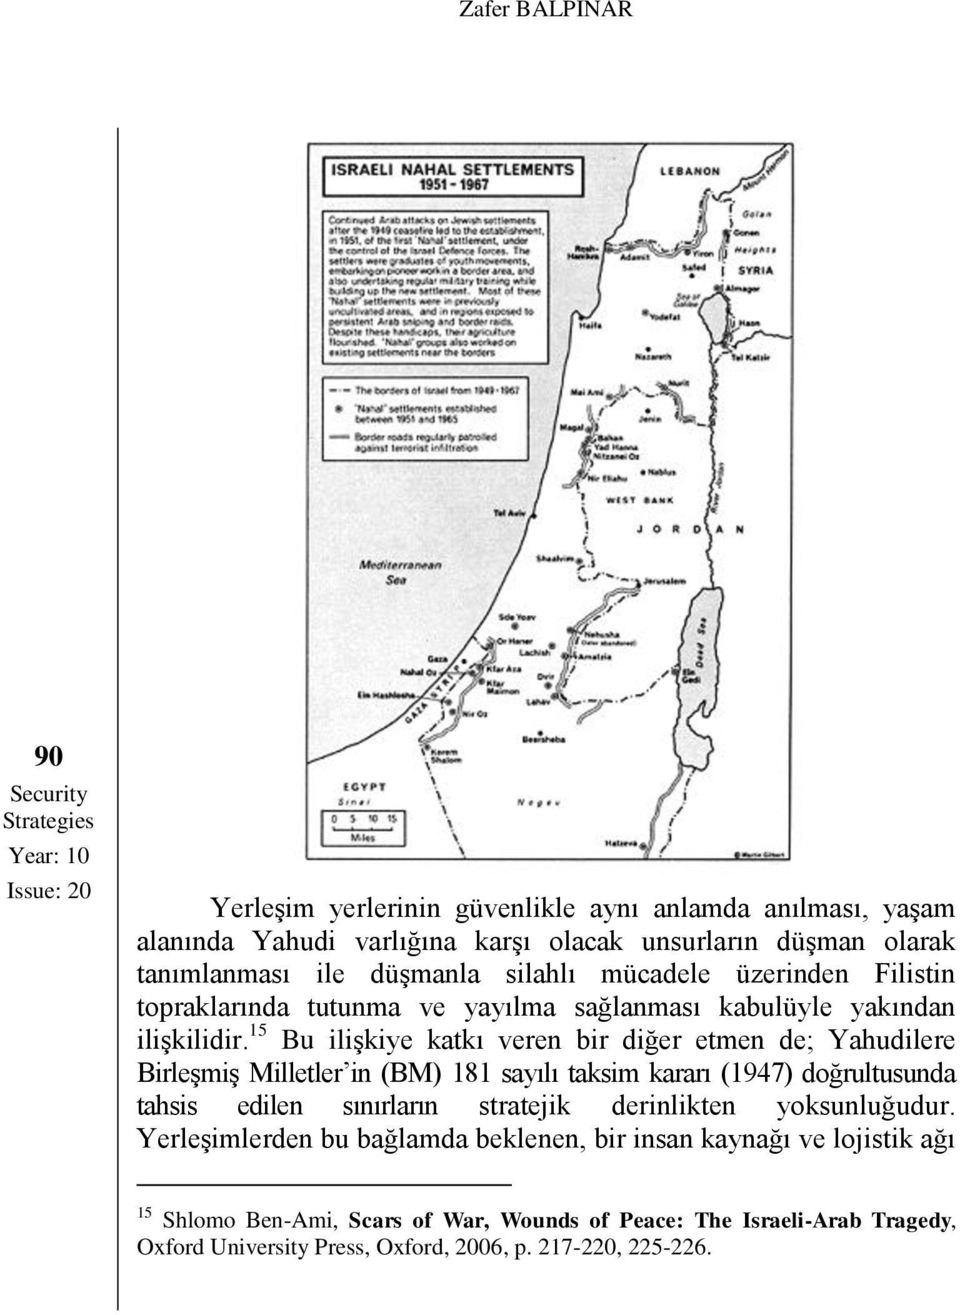 15 Bu ilişkiye katkı veren bir diğer etmen de; Yahudilere Birleşmiş Milletler in (BM) 181 sayılı taksim kararı (1947) doğrultusunda tahsis edilen sınırların stratejik derinlikten